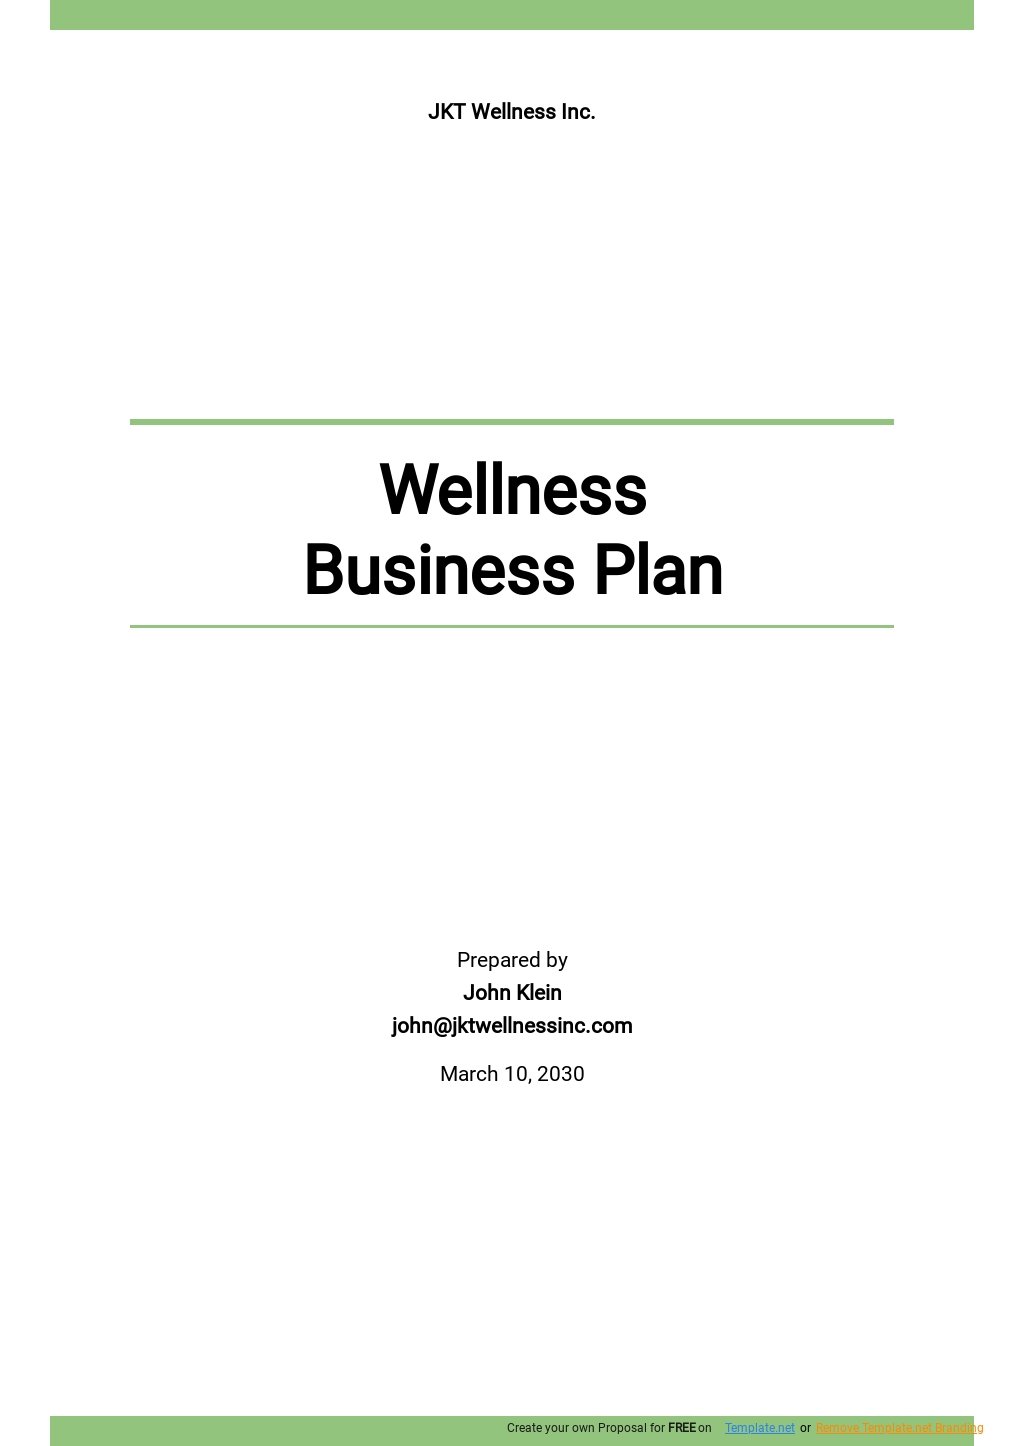 Wellness Business Plan Template